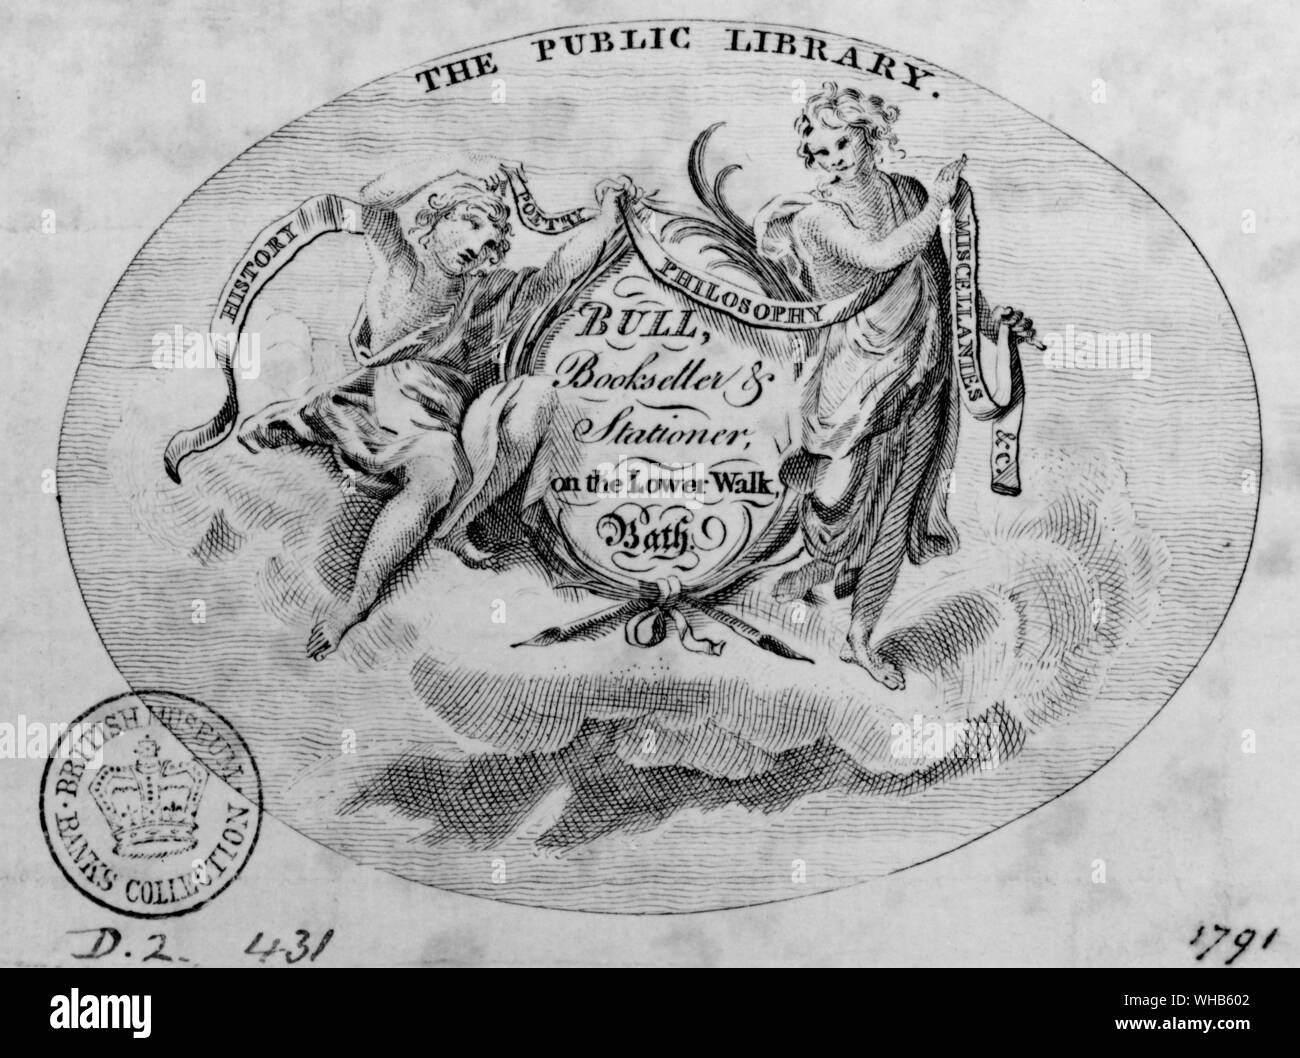 Die Öffentliche Bibliothek. Handel Karte für Bull, Buchhändler & Papierladen, auf dem unteren Fuß, 1791. Das British Museum. Banken Sammlung von Karten. . Stockfoto